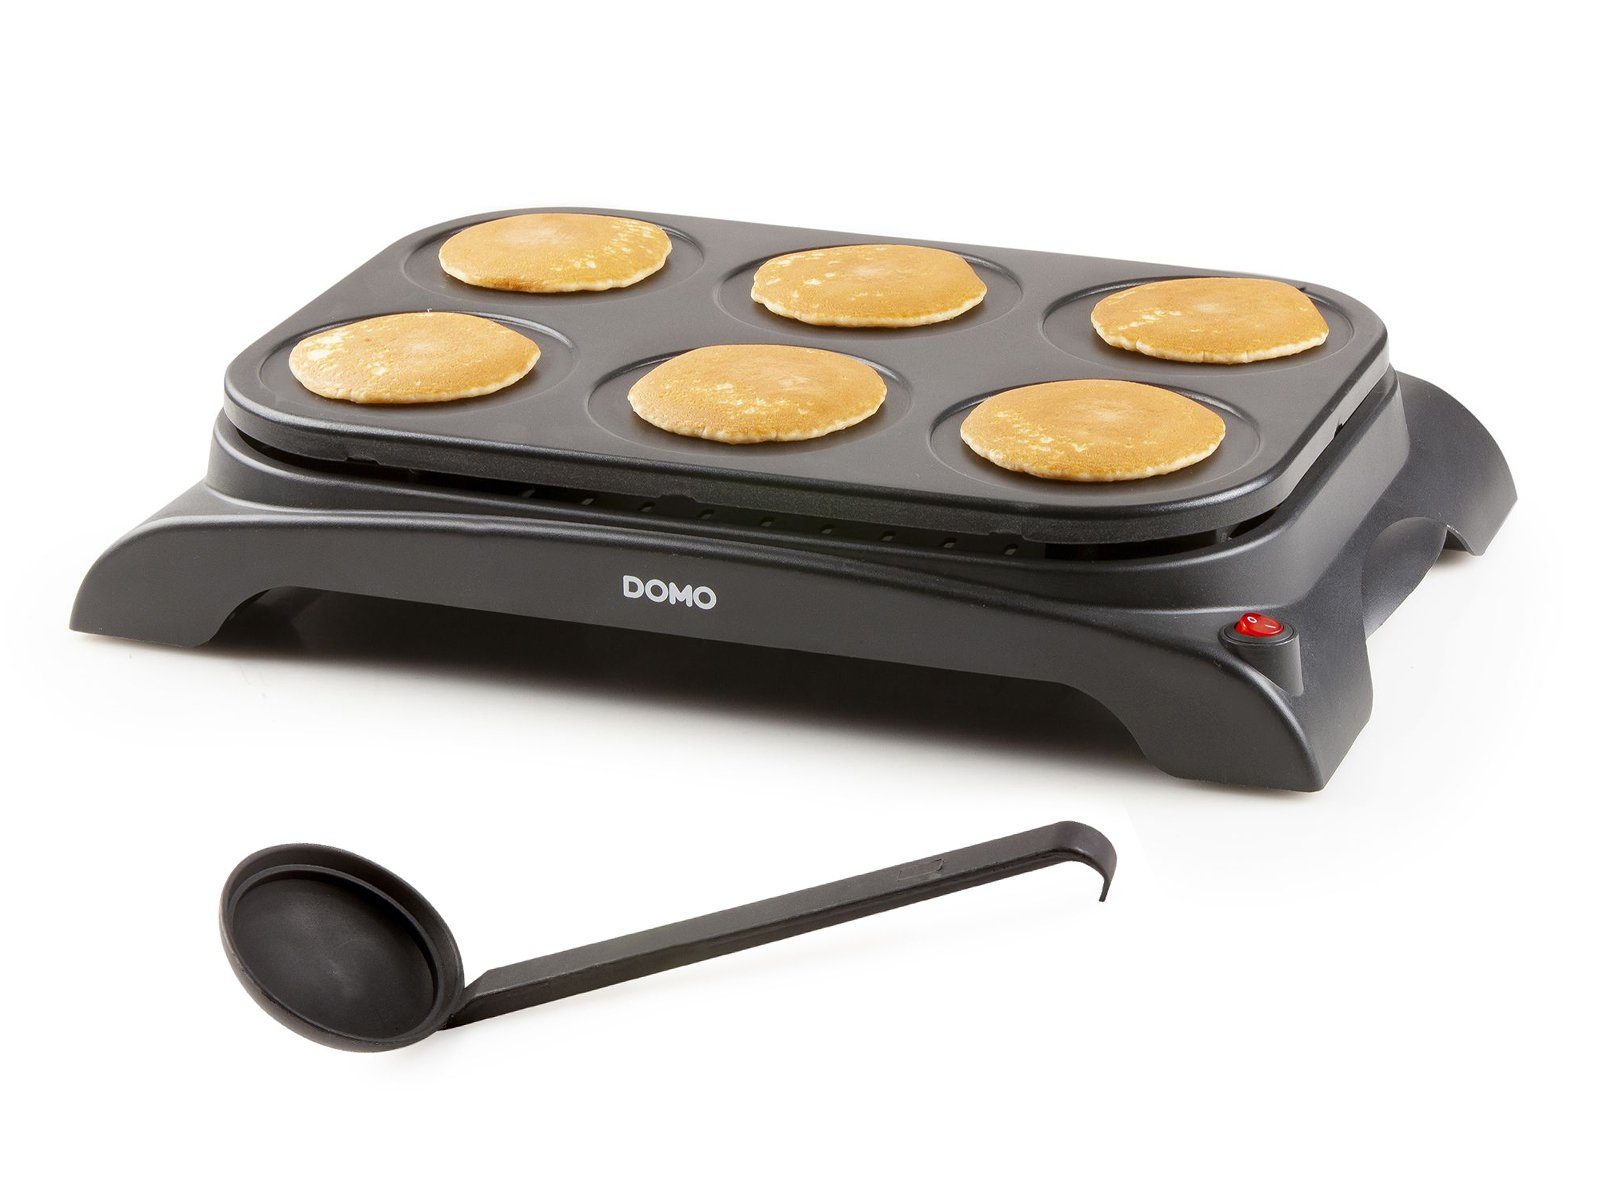 Domo Crêpesmaker, W, machen Crepes-Eisen Pfannkuchen Ø Creperie süße Pancake selber cm, 1000 11.5 6 salzige